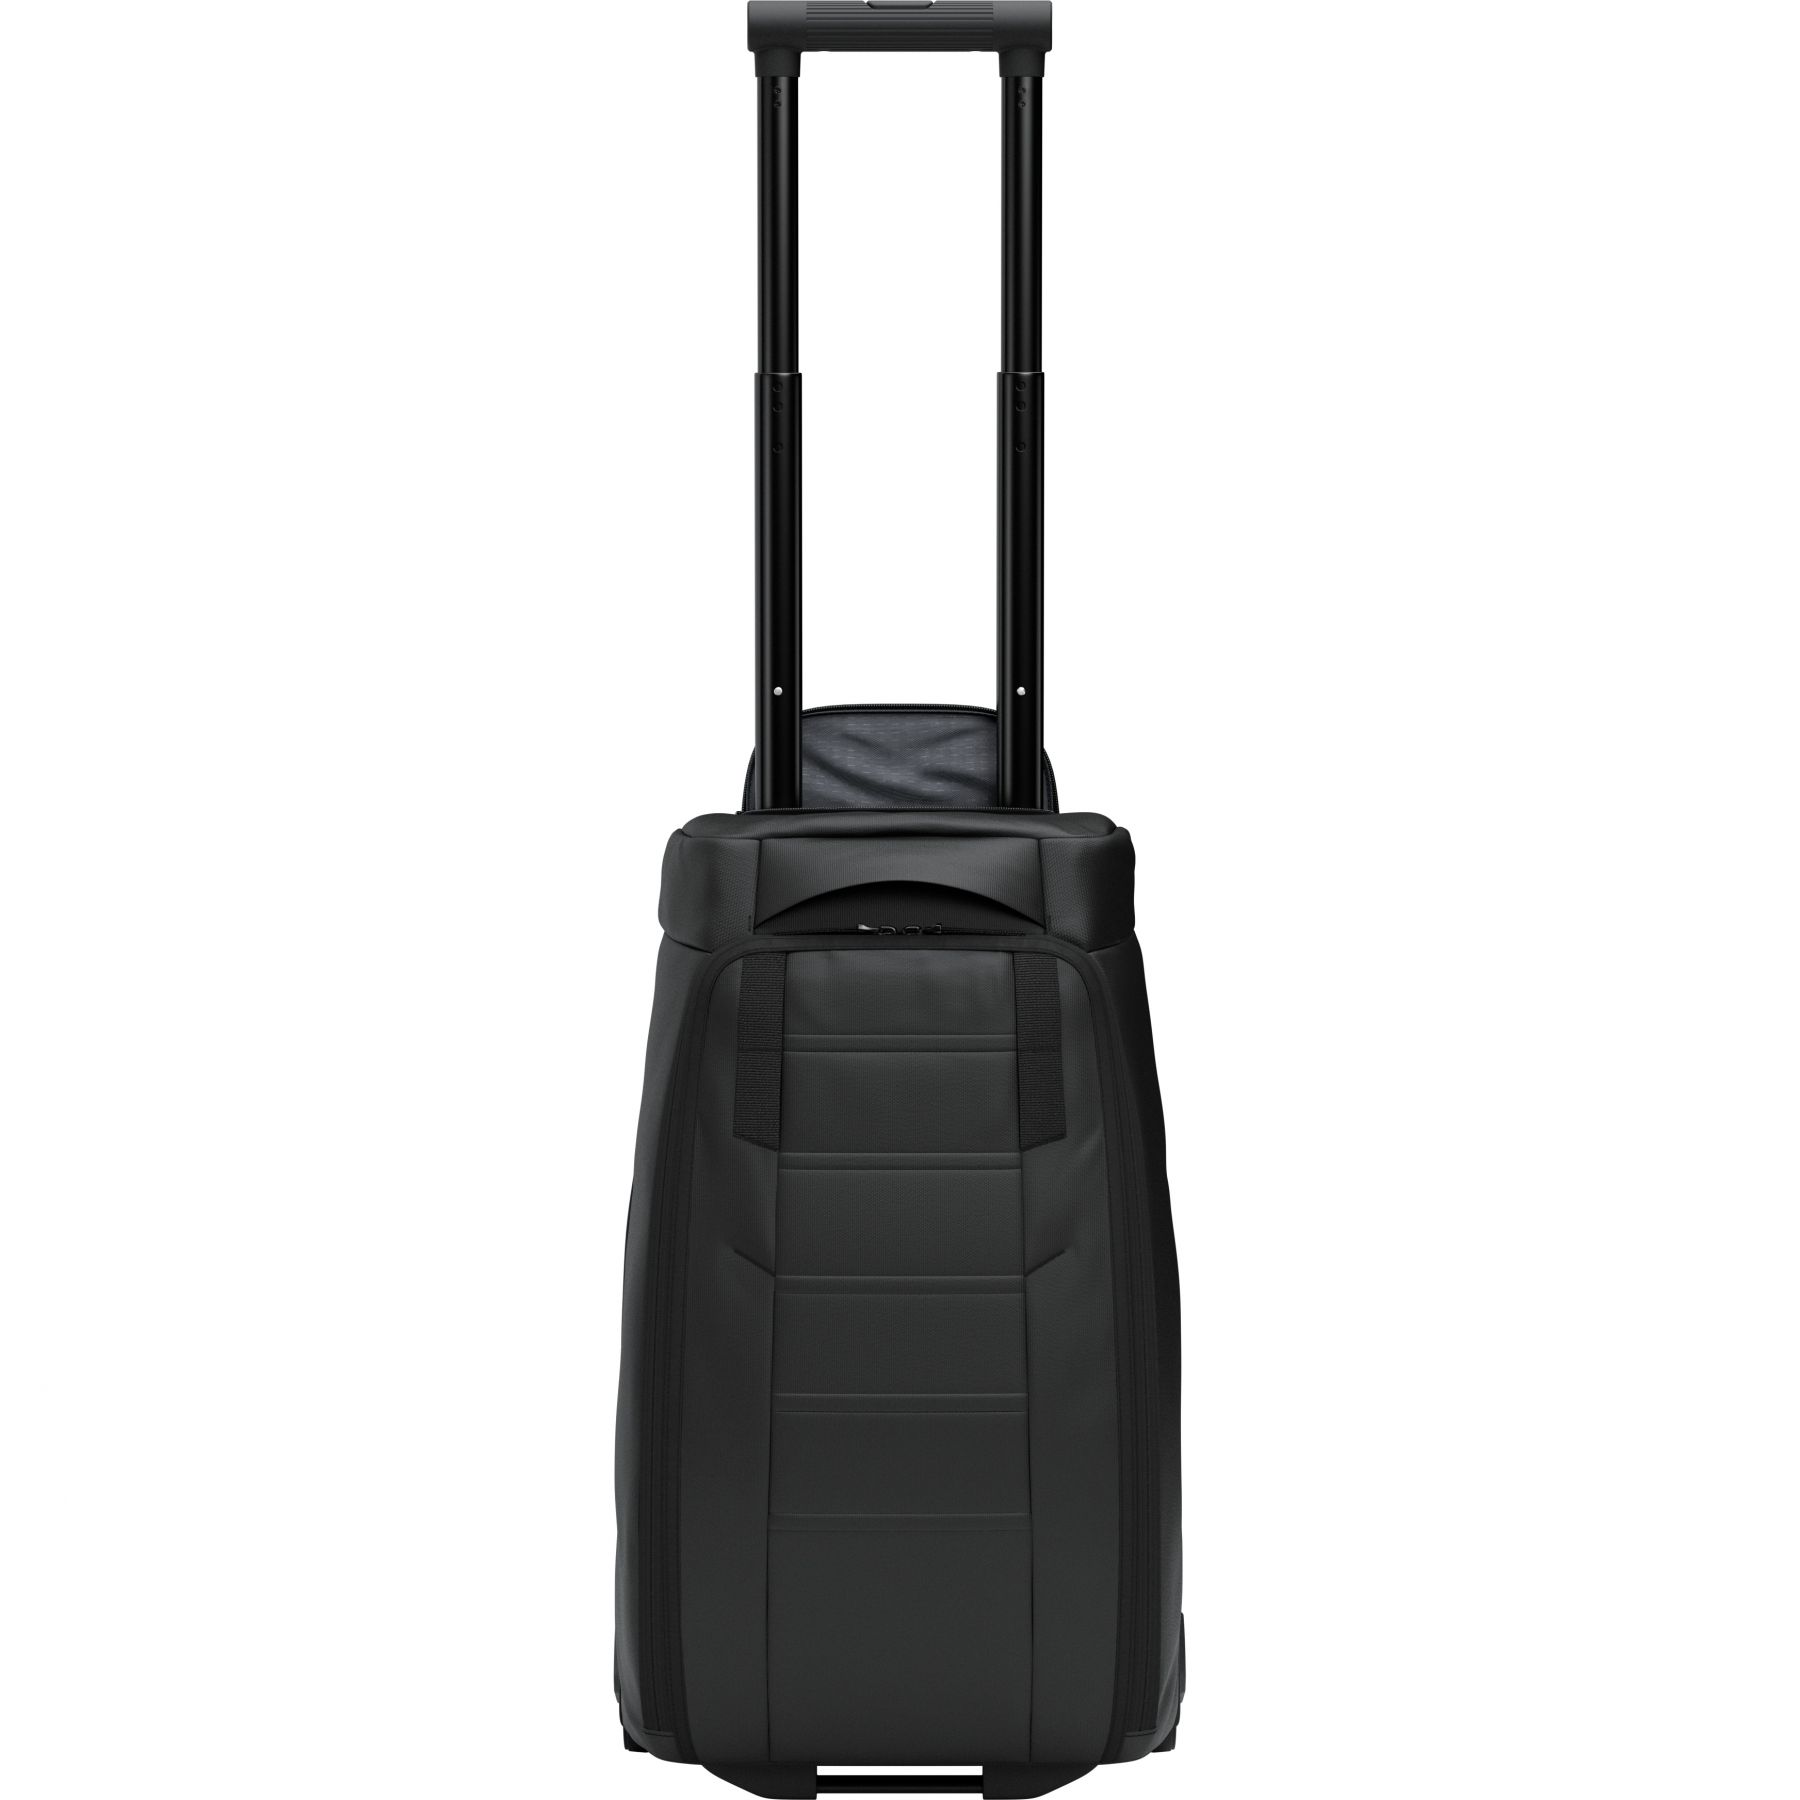 Brug Db Hugger Carry-on, 40L, black out til en forbedret oplevelse